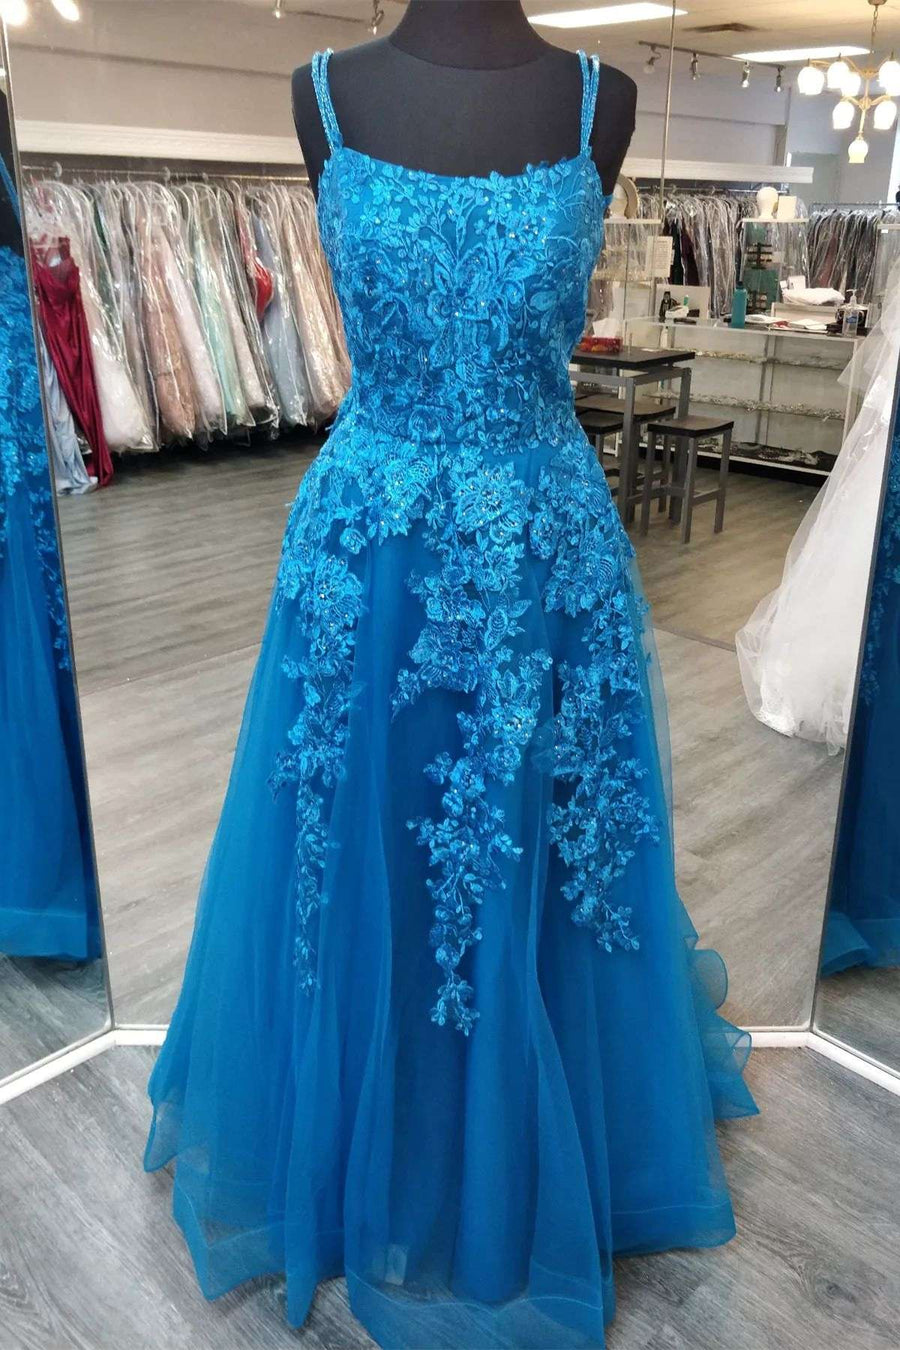 Blue Floral Lace Lace-Up A-Line Prom Dress